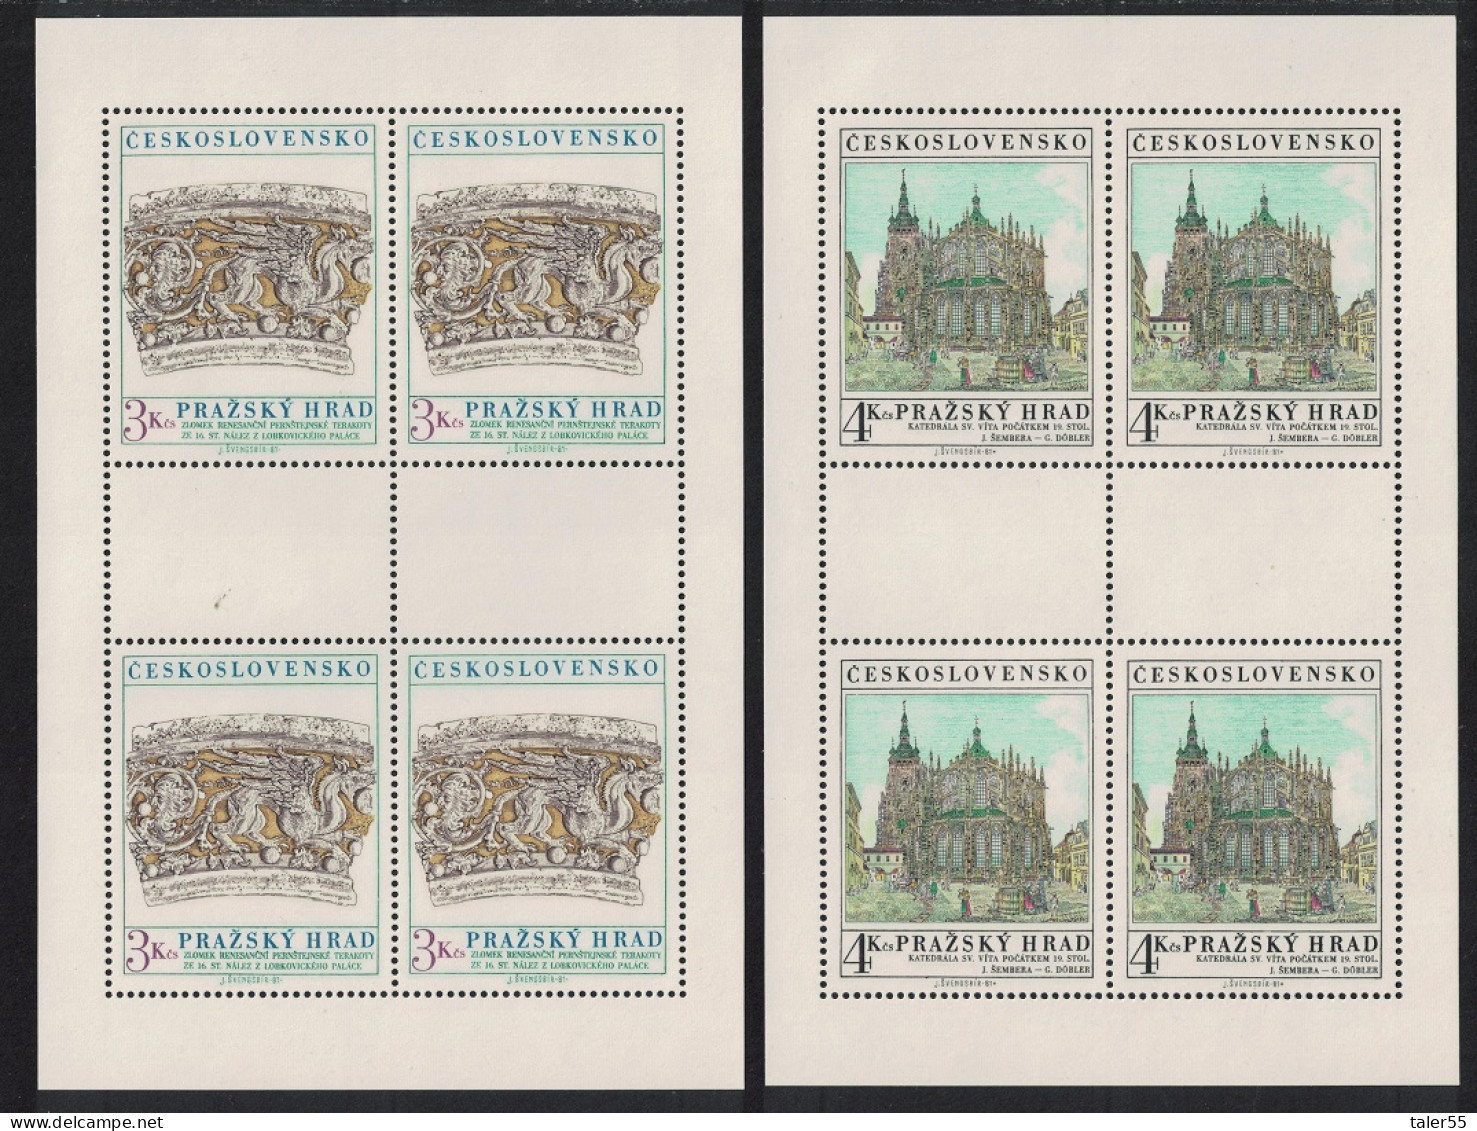 Czechoslovakia Prague Castle 17th Series 2 Sheetlets 1981 MNH SG#2599-2600 - Ongebruikt